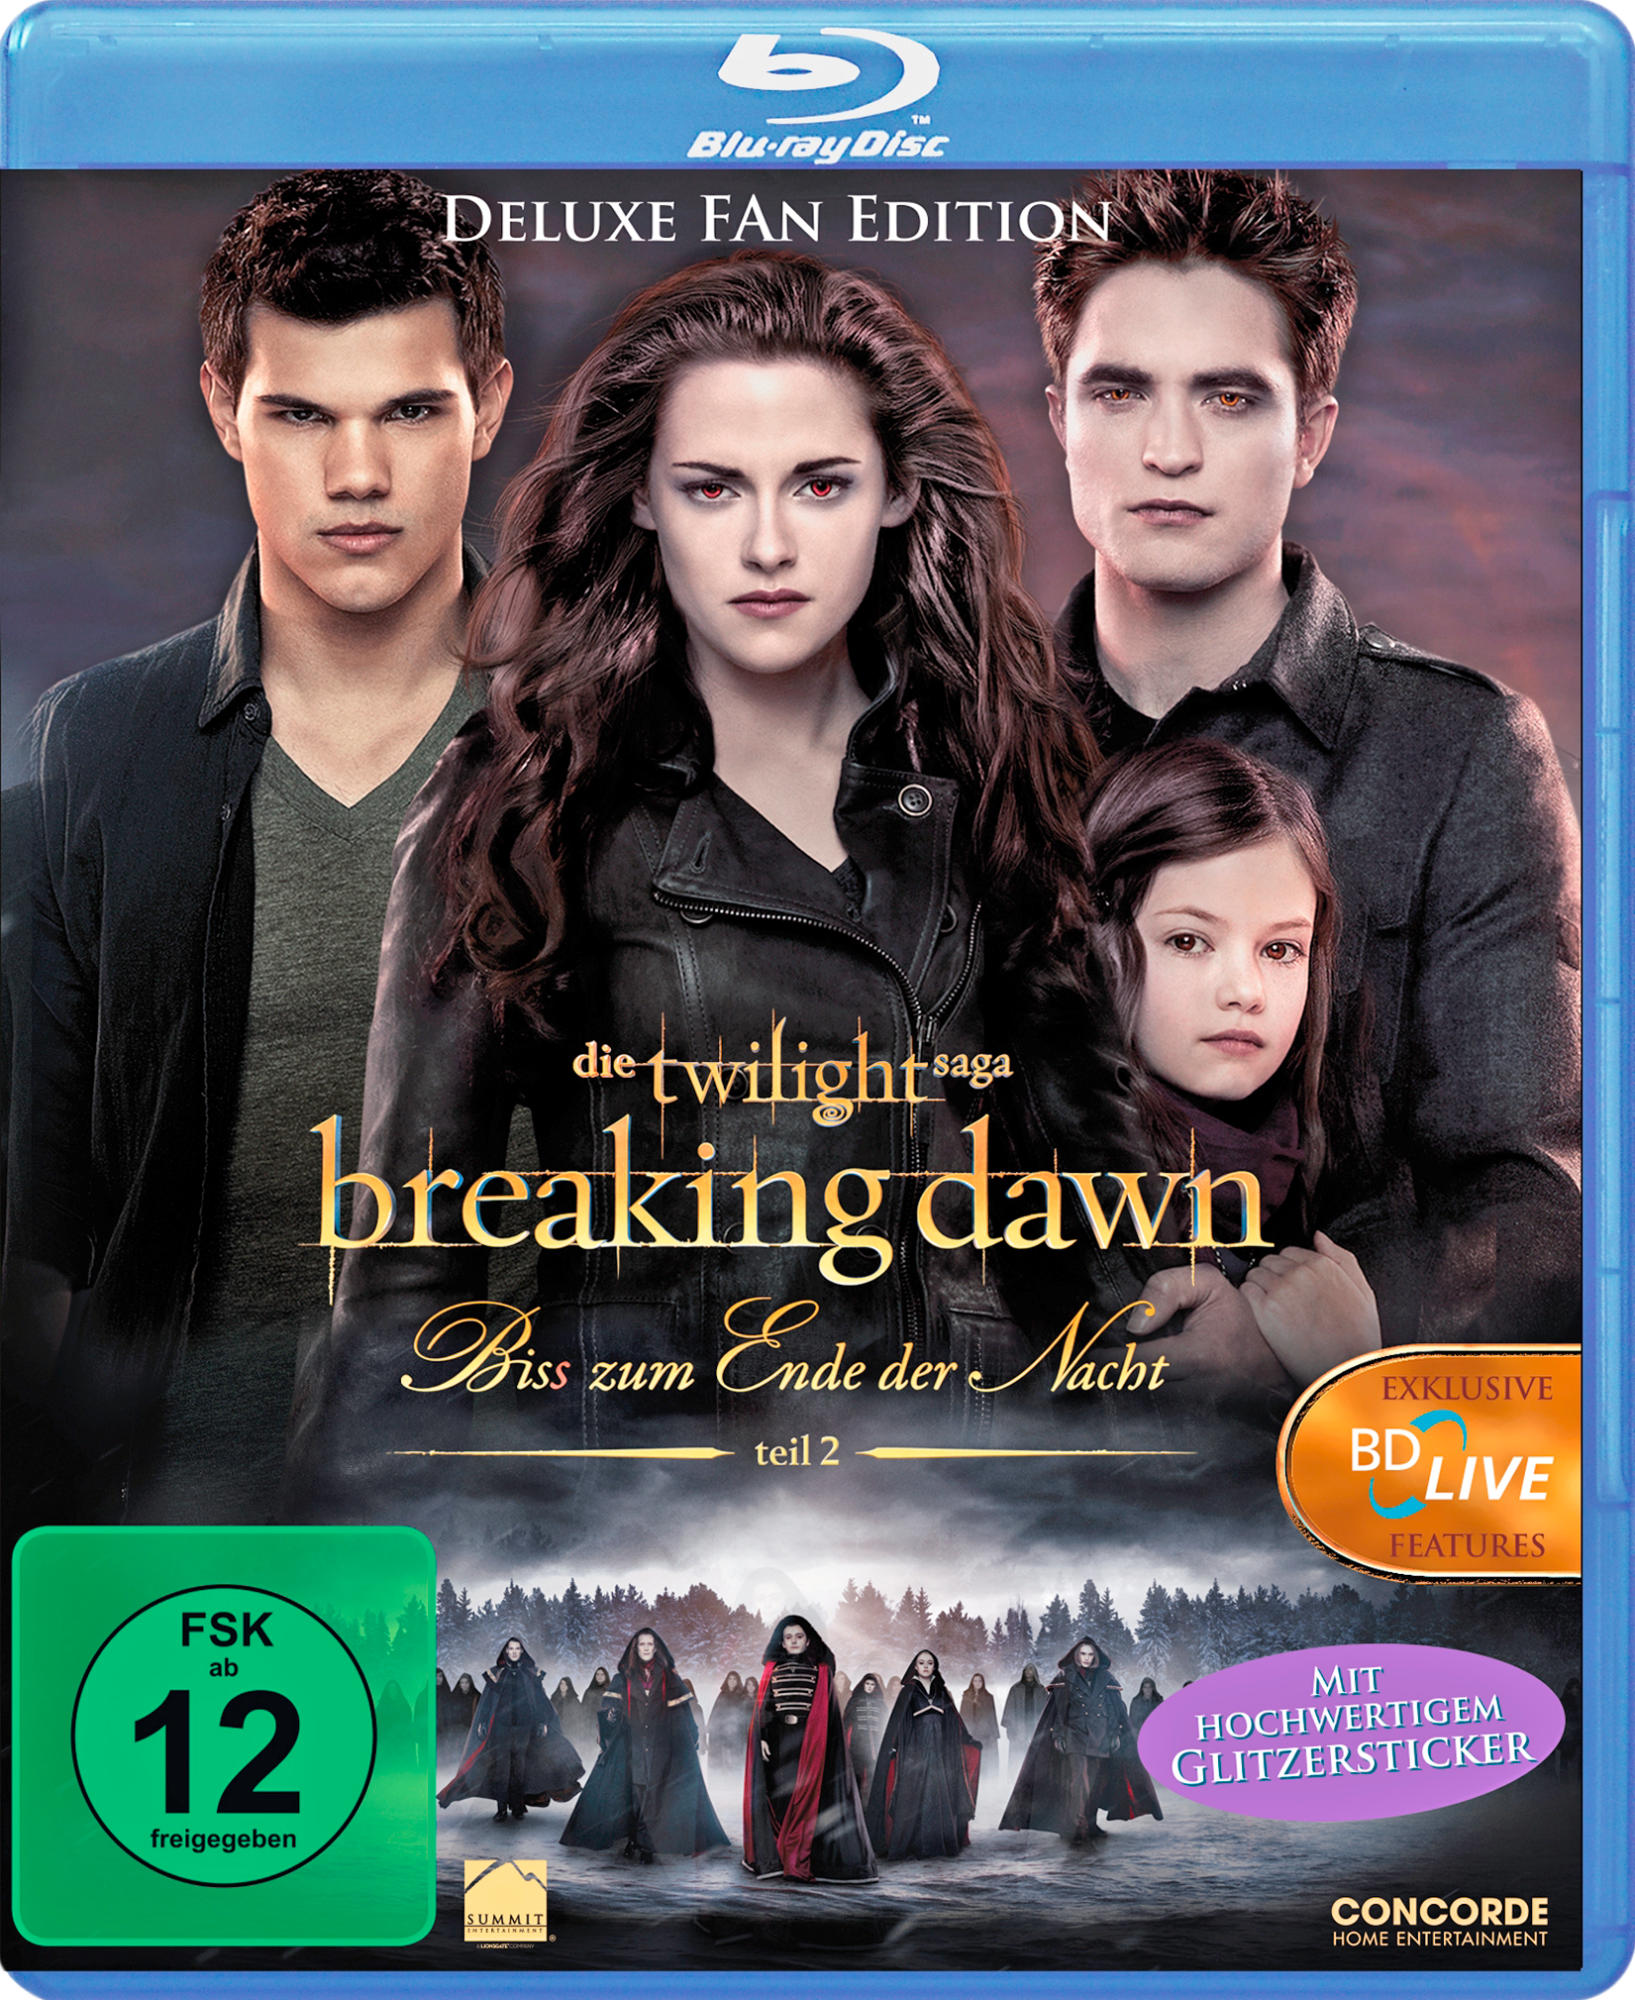 Twilight - Breaking Dawn Ende – Bis(s) Blu-ray der - Teil zum Nacht 2